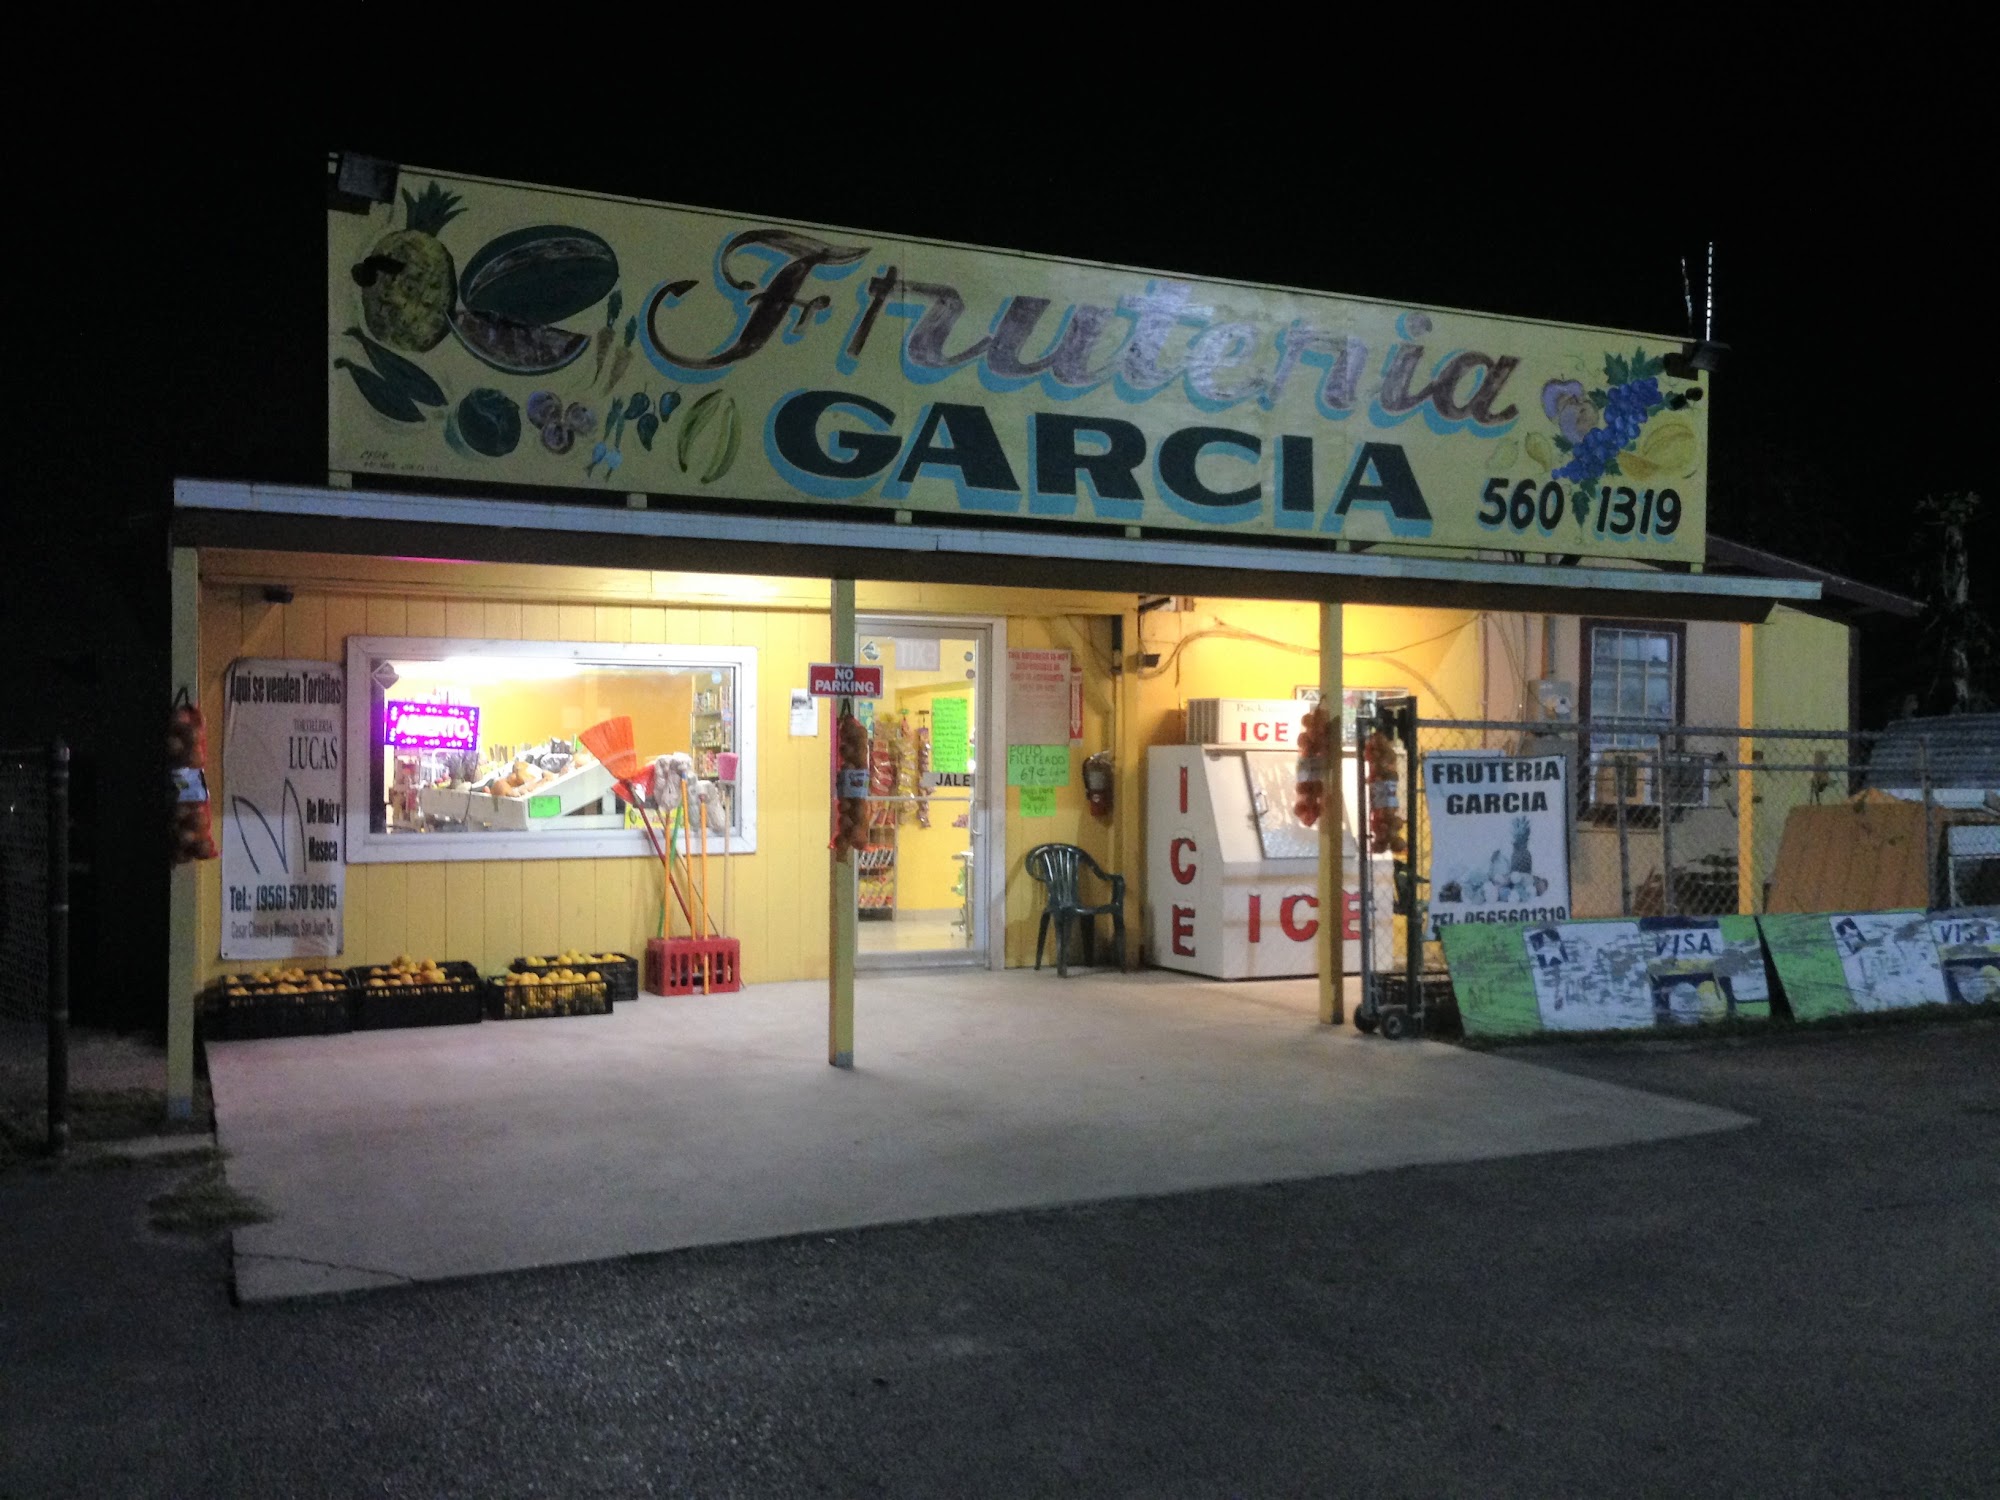 Carniceria Y Fruteria Garcia